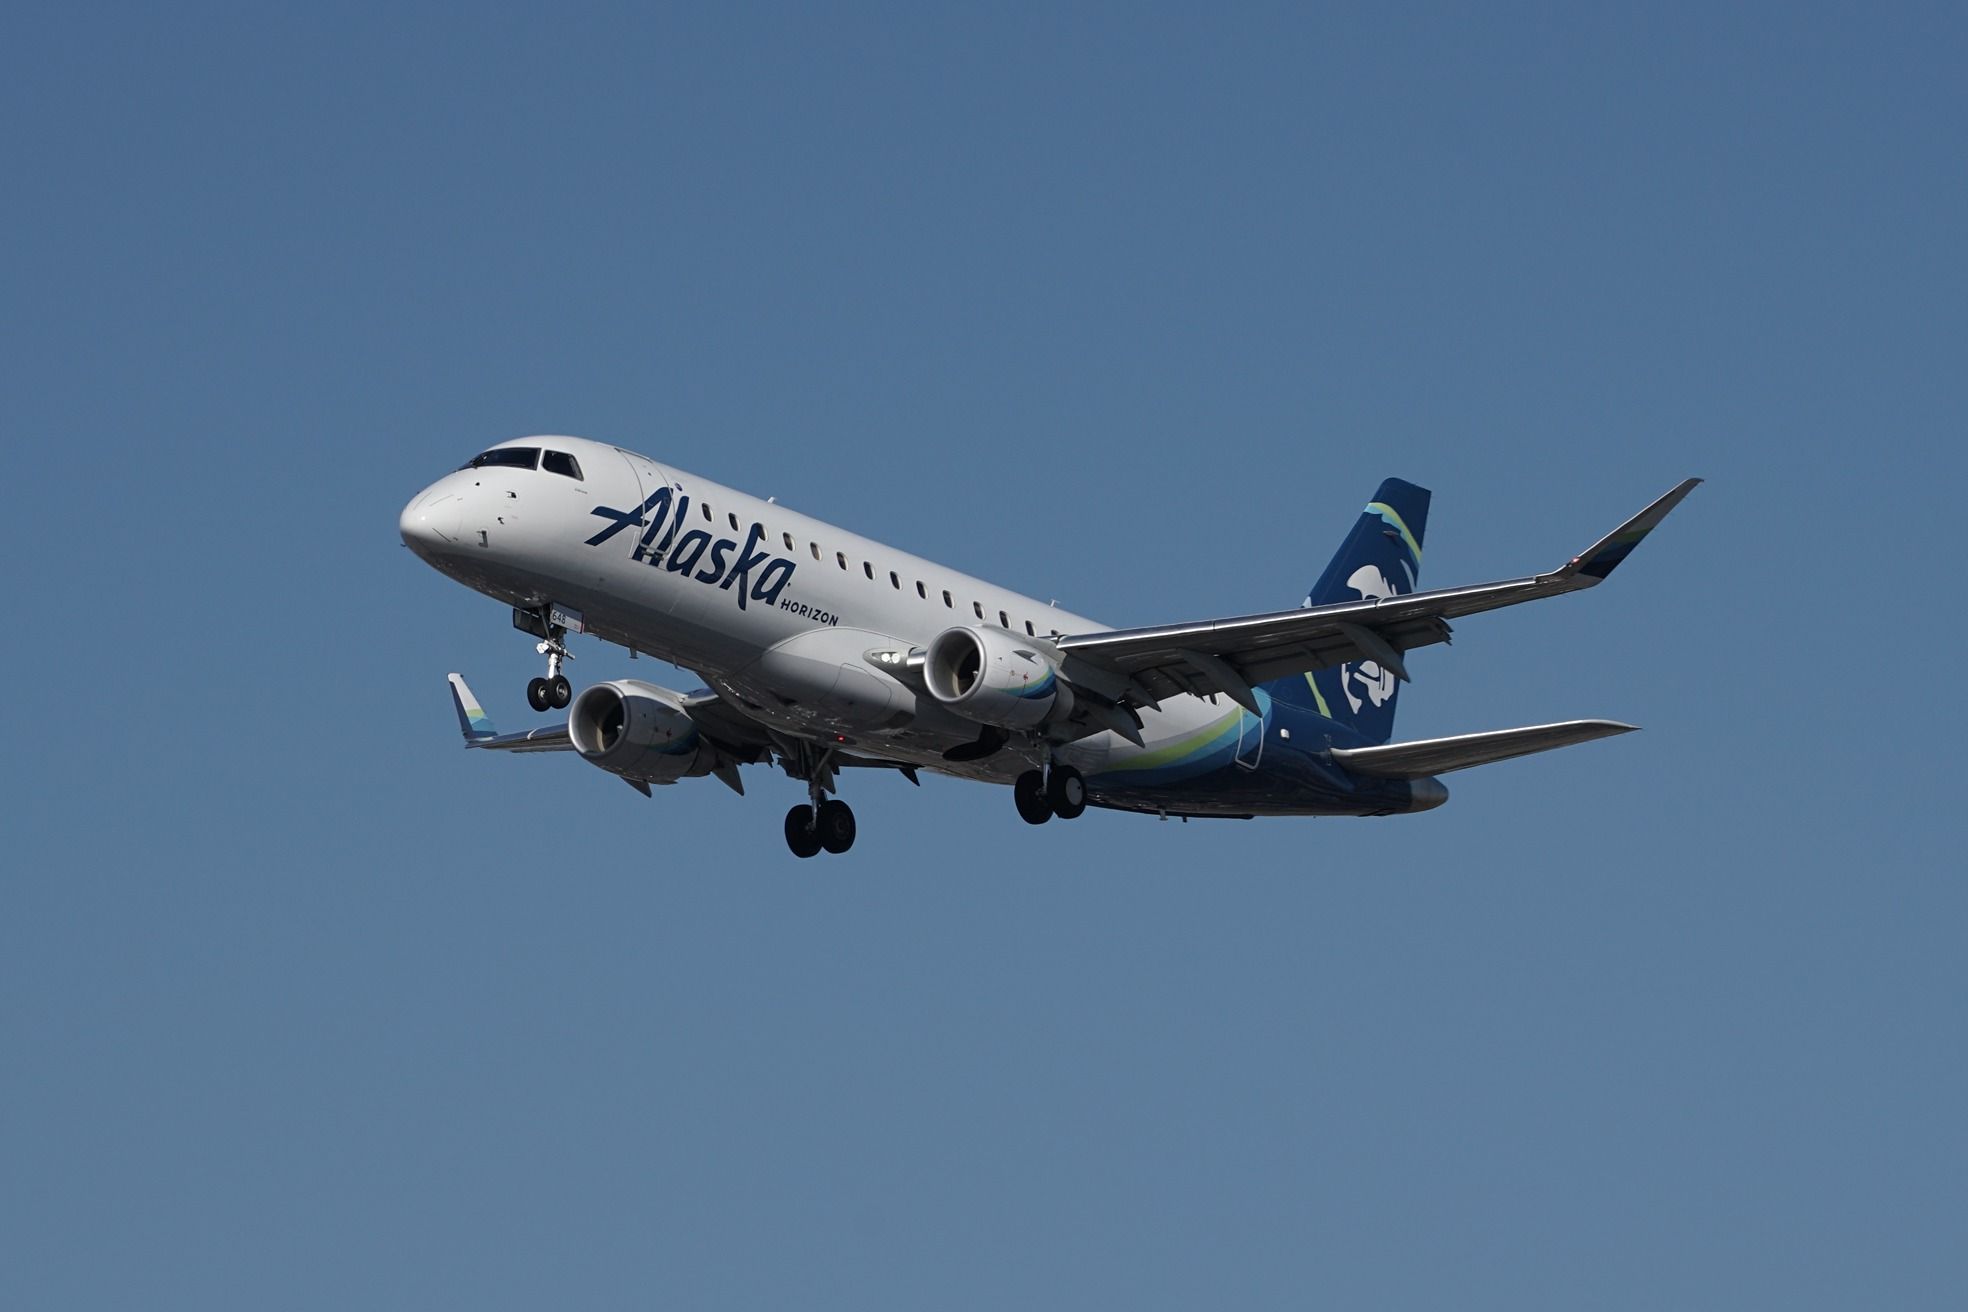 一架地平线航空巴西航空工业公司 E175 在天空中飞行。